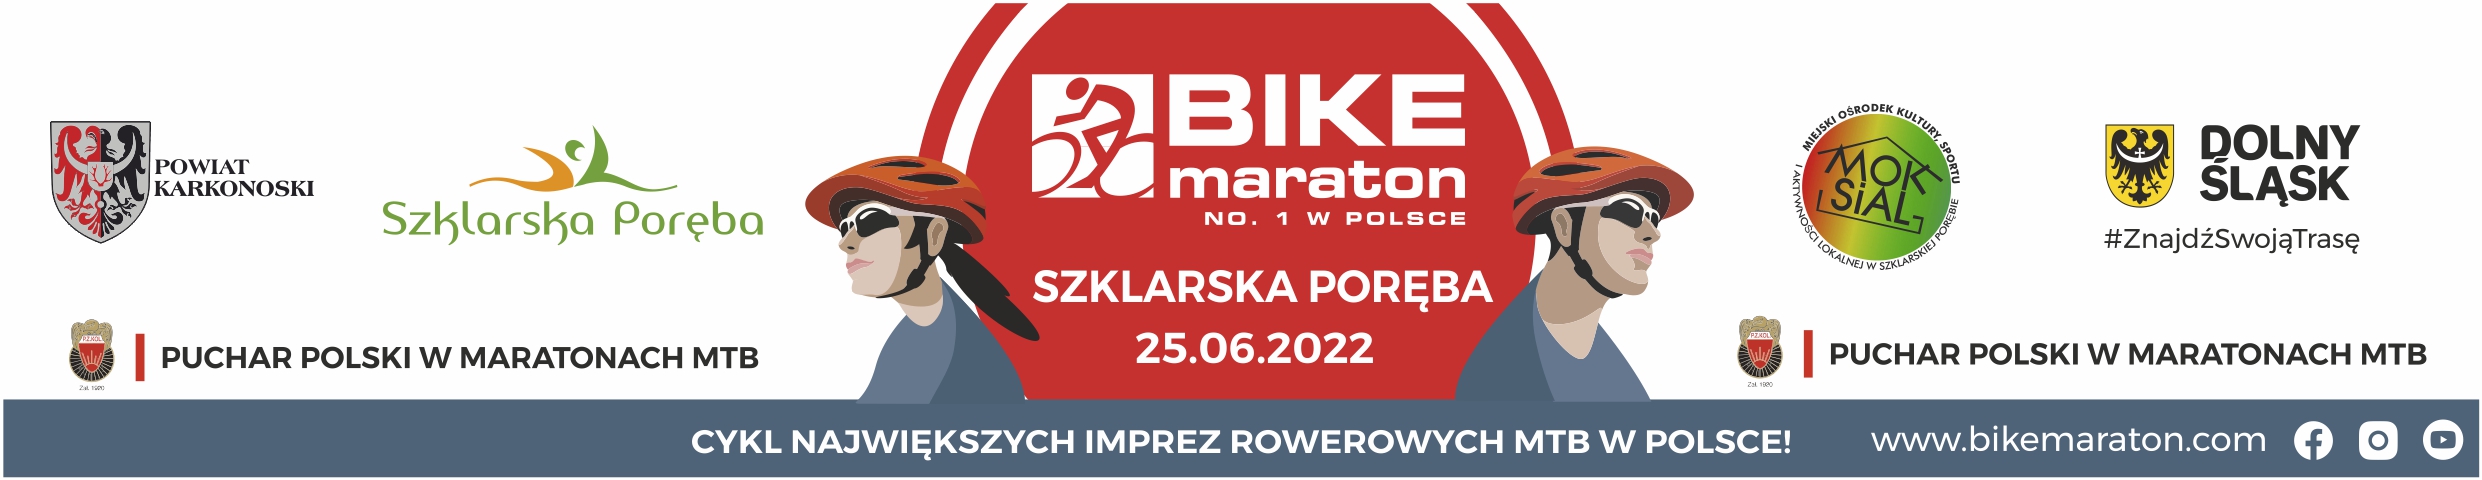 Bike Maraton - nr 1 w Polsce